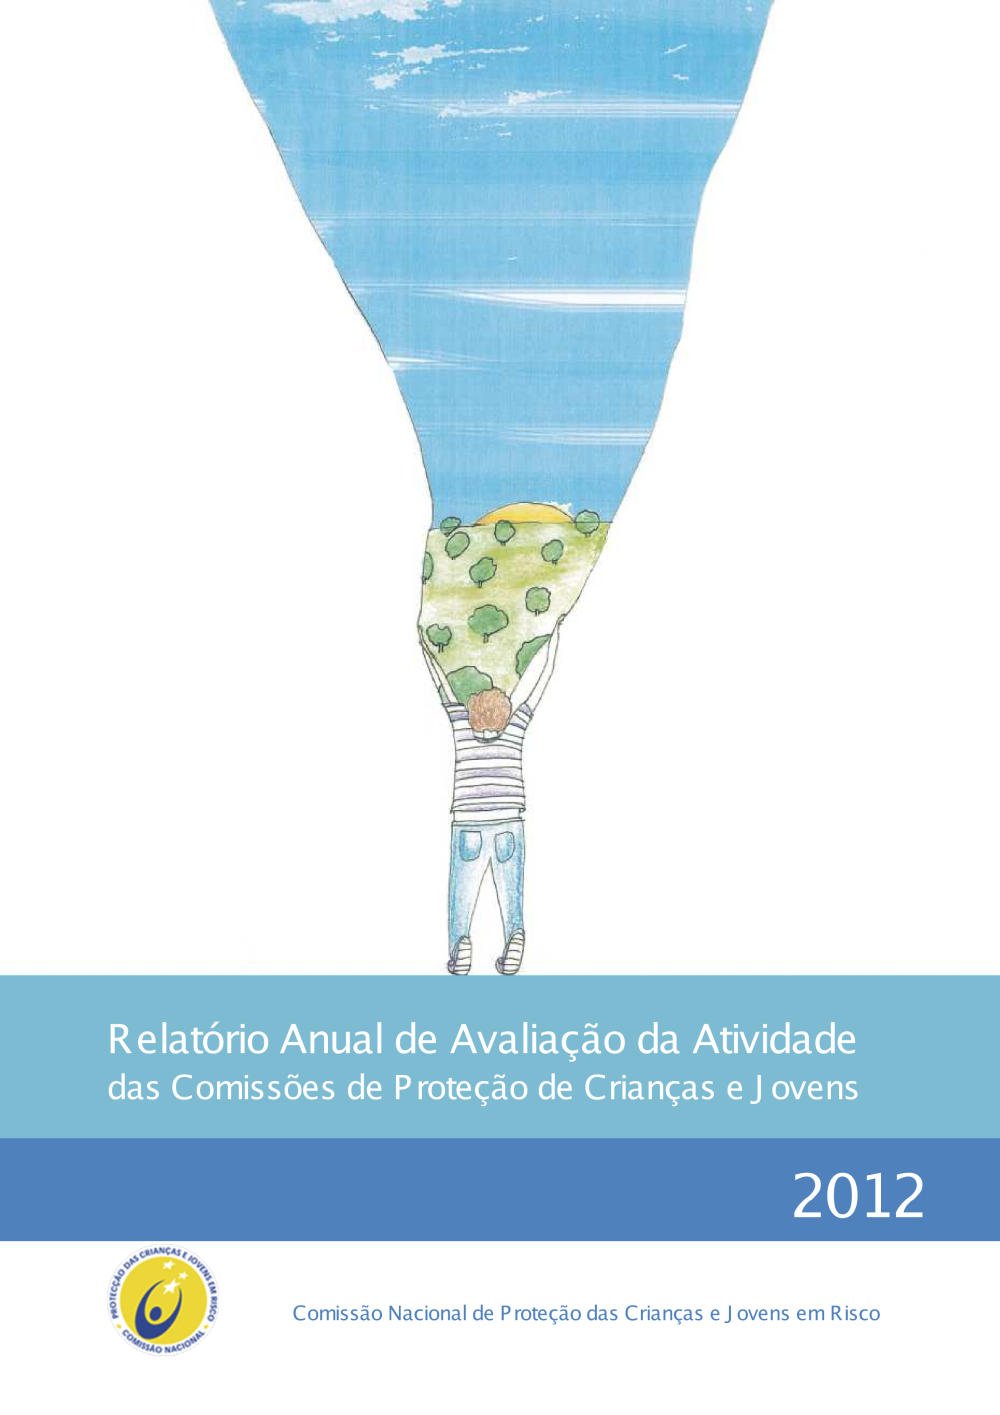 Relatório Anual de avaliação da atividade das CPCJ do ano de 2012